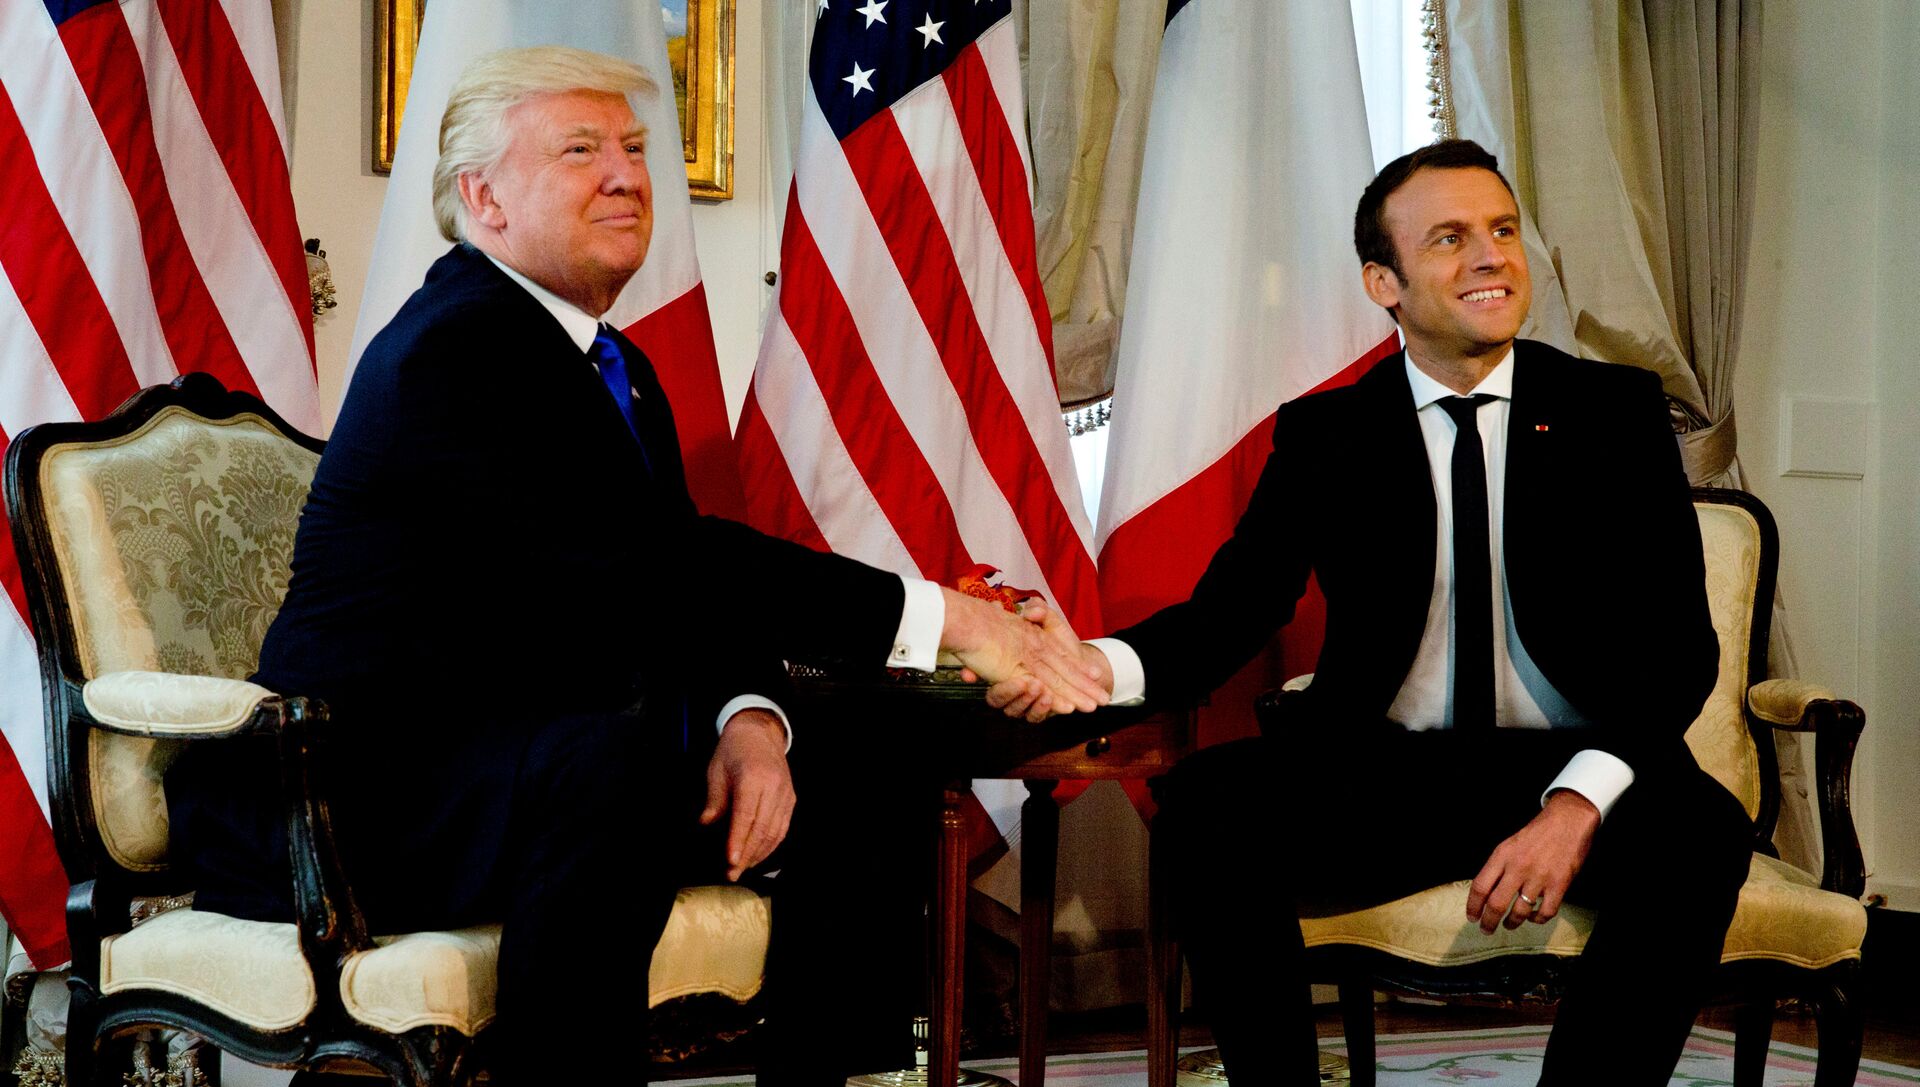 Президент США Дональд Трамп и президент Франции Эммануэль Макрон в Брюсселе, Бельгия. 25 мая 2017 - РИА Новости, 1920, 01.07.2017